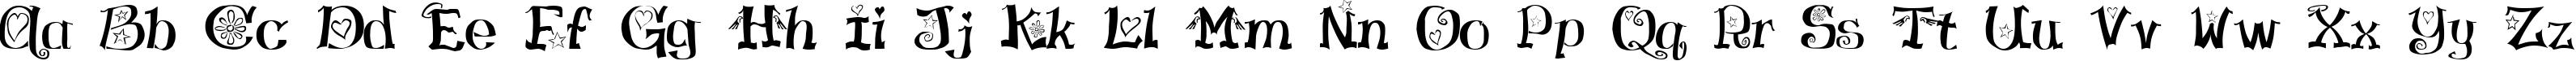 Пример написания английского алфавита шрифтом Virgin Regular